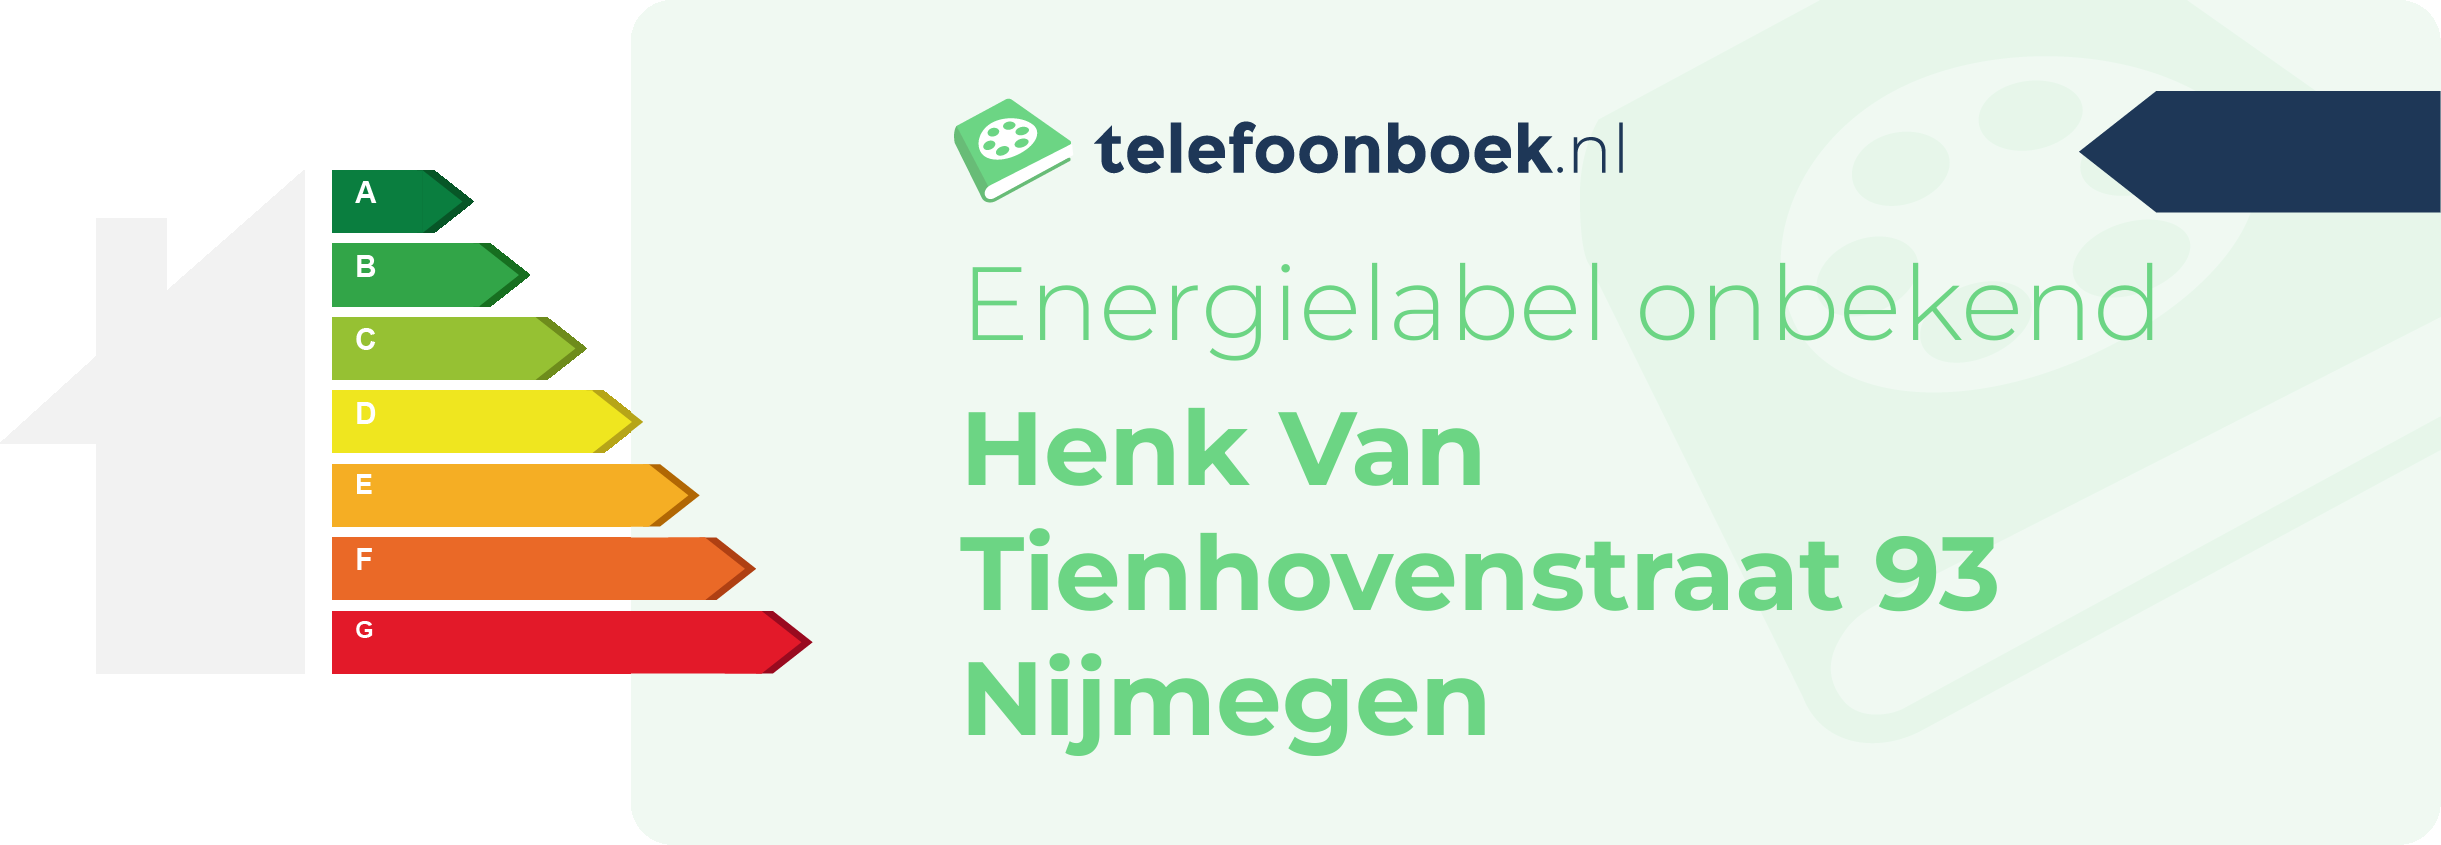 Energielabel Henk Van Tienhovenstraat 93 Nijmegen